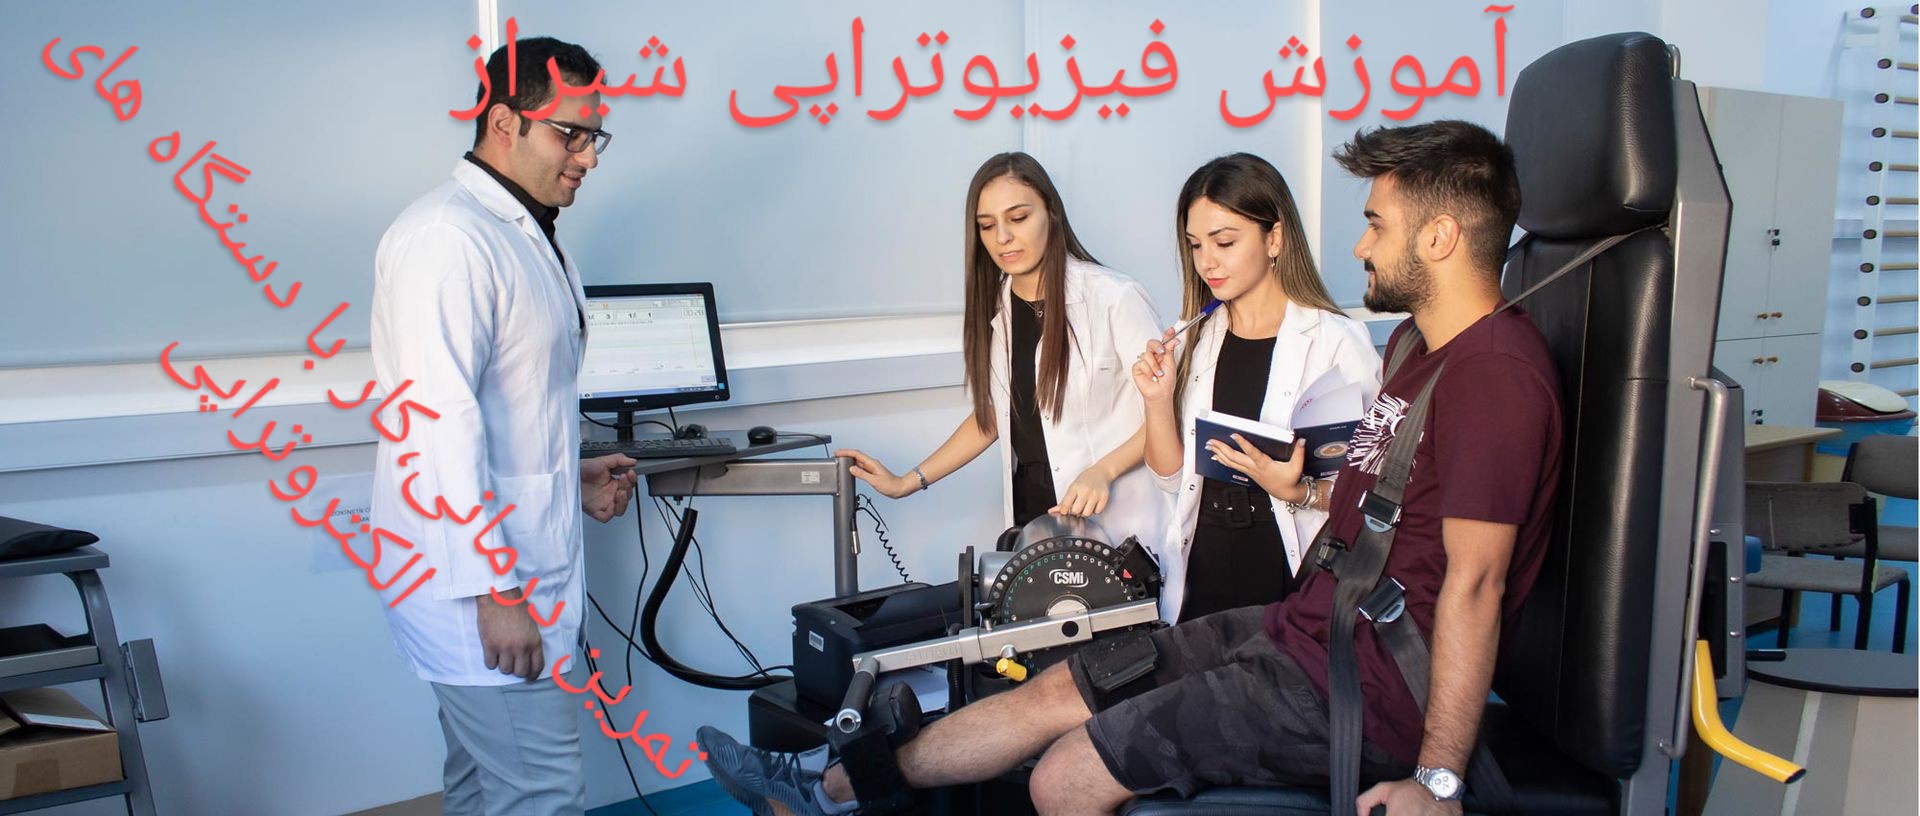 آموزش تخصصی فیزیوتراپی در شیراز